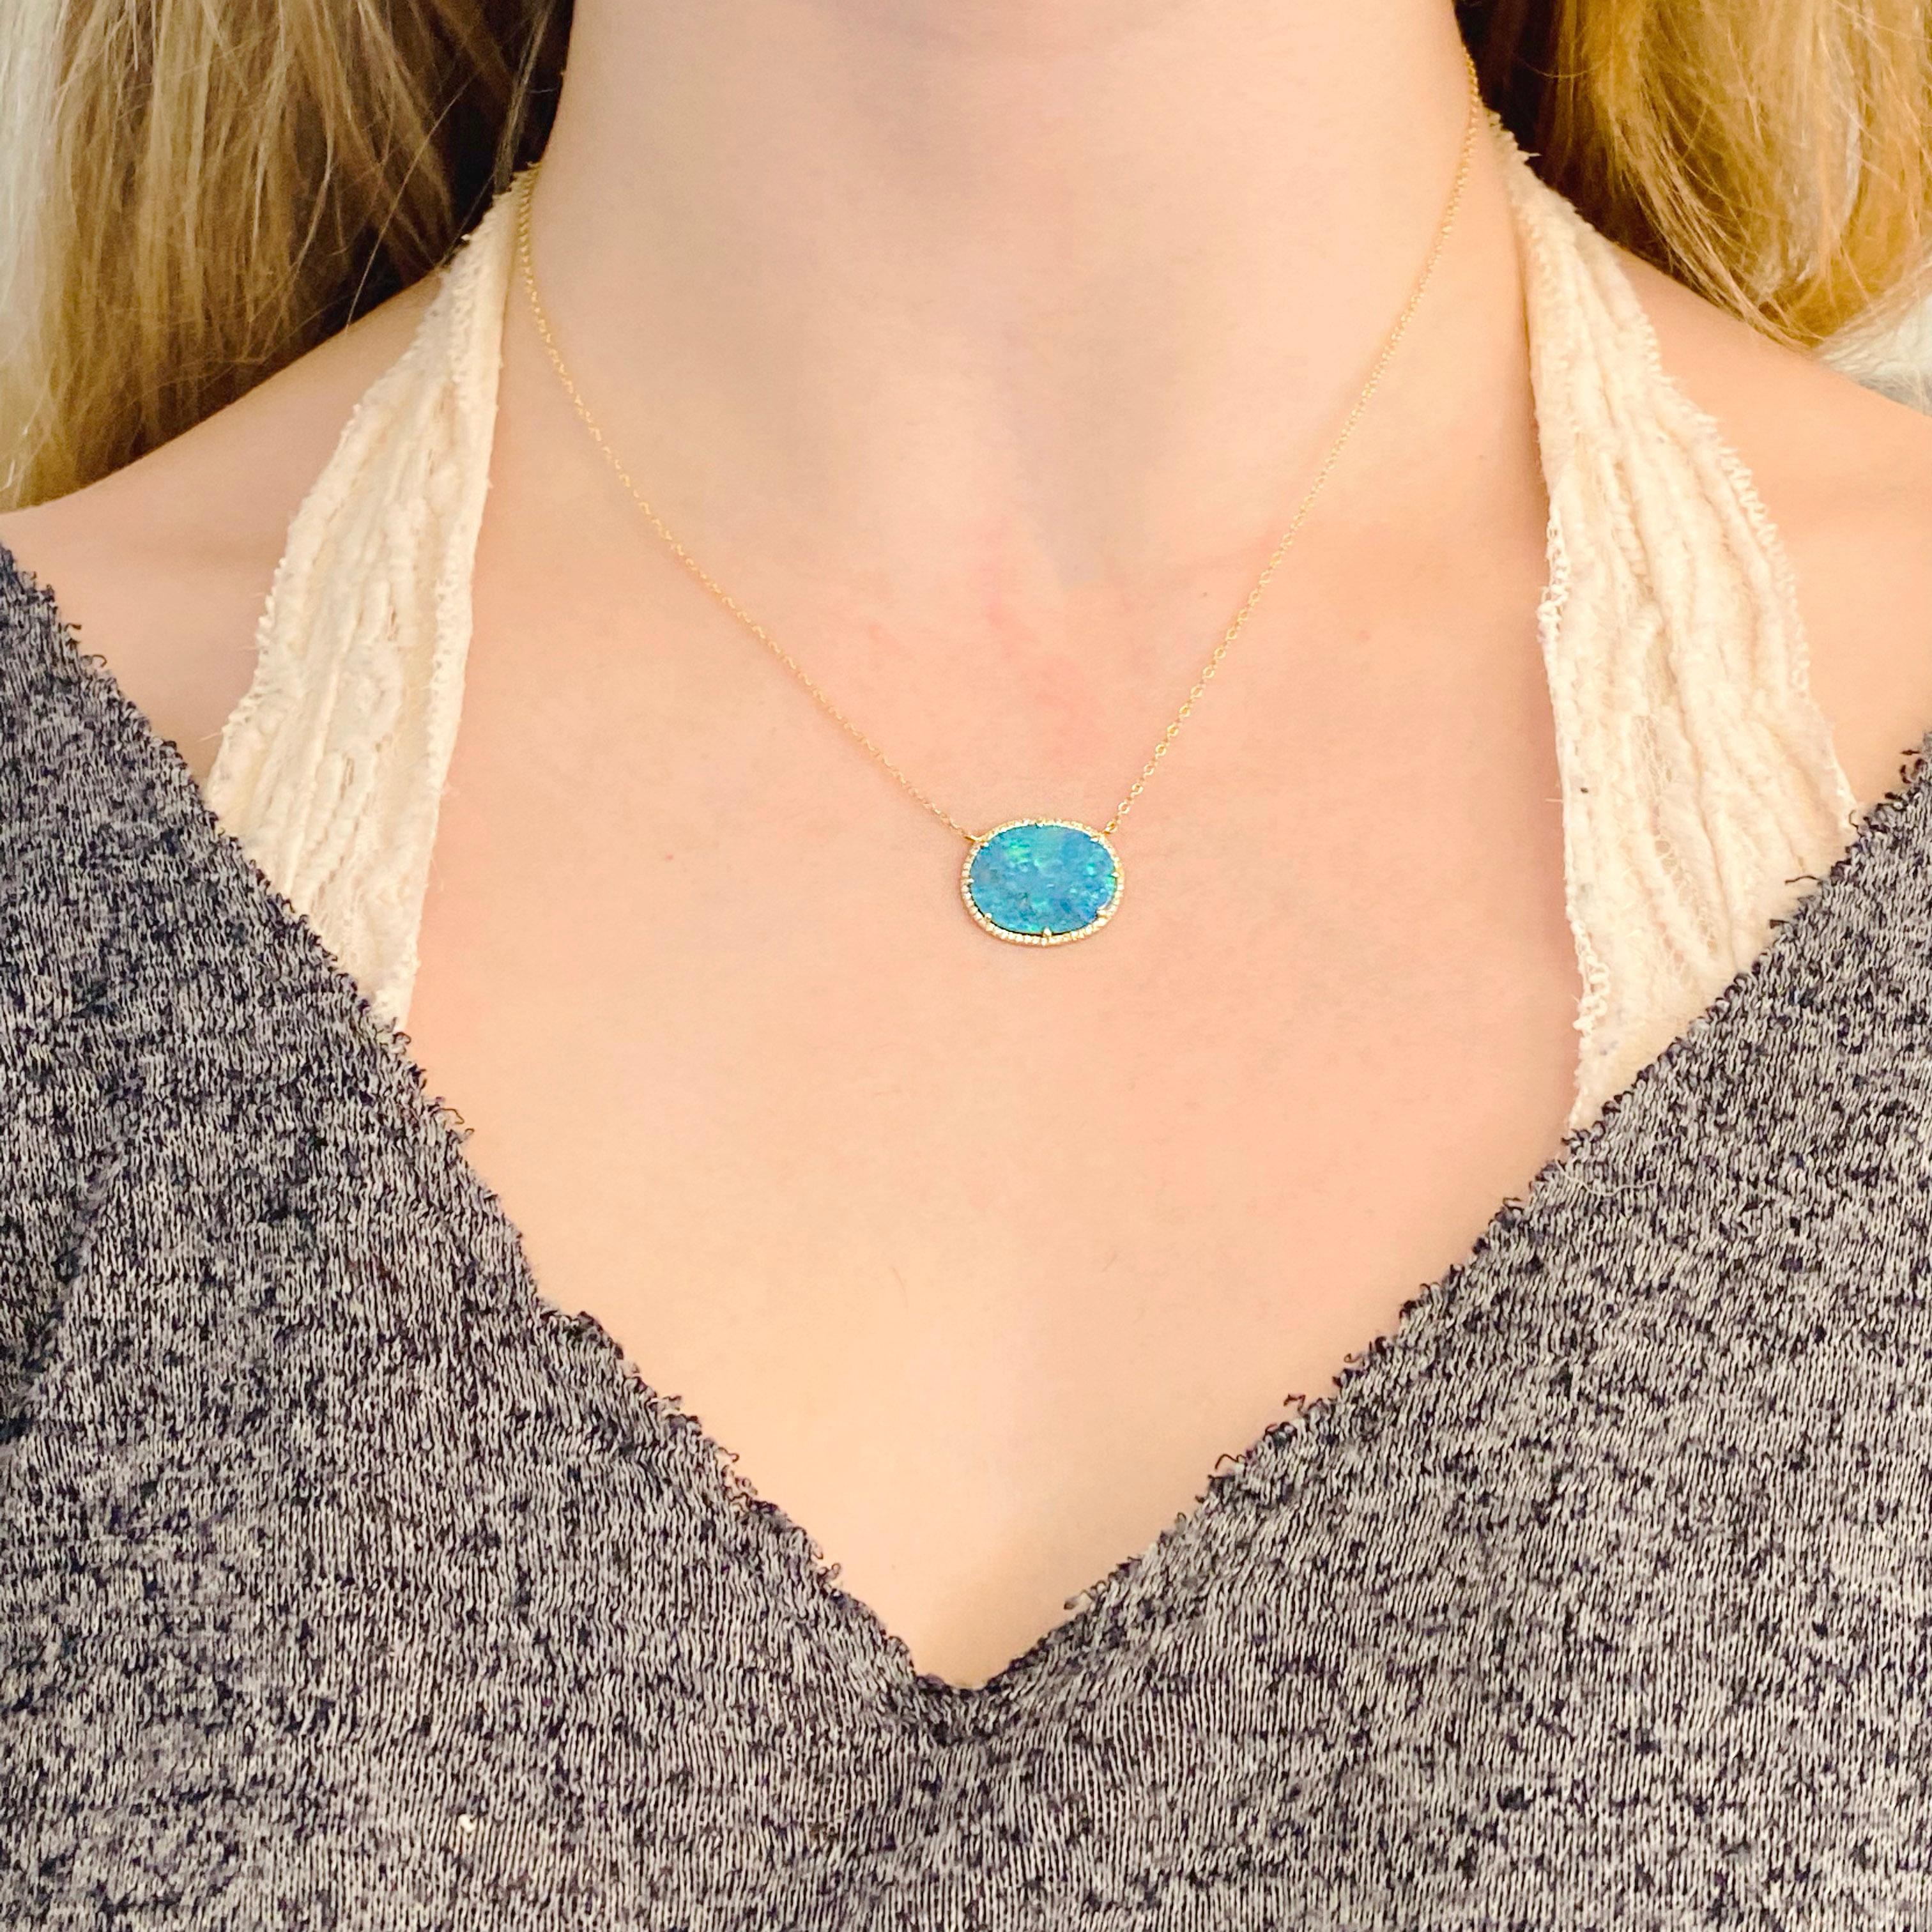 Der echte schwarze Opal hat eine intensive blaue Farbe und ist ein echter Blickfang am Hals. Die Diamanten, die den Opal umgeben, machen ihn noch faszinierender. Umgeben von 14 Karat Gelbgold kommt die Farbe des natürlichen Opals besonders gut zur